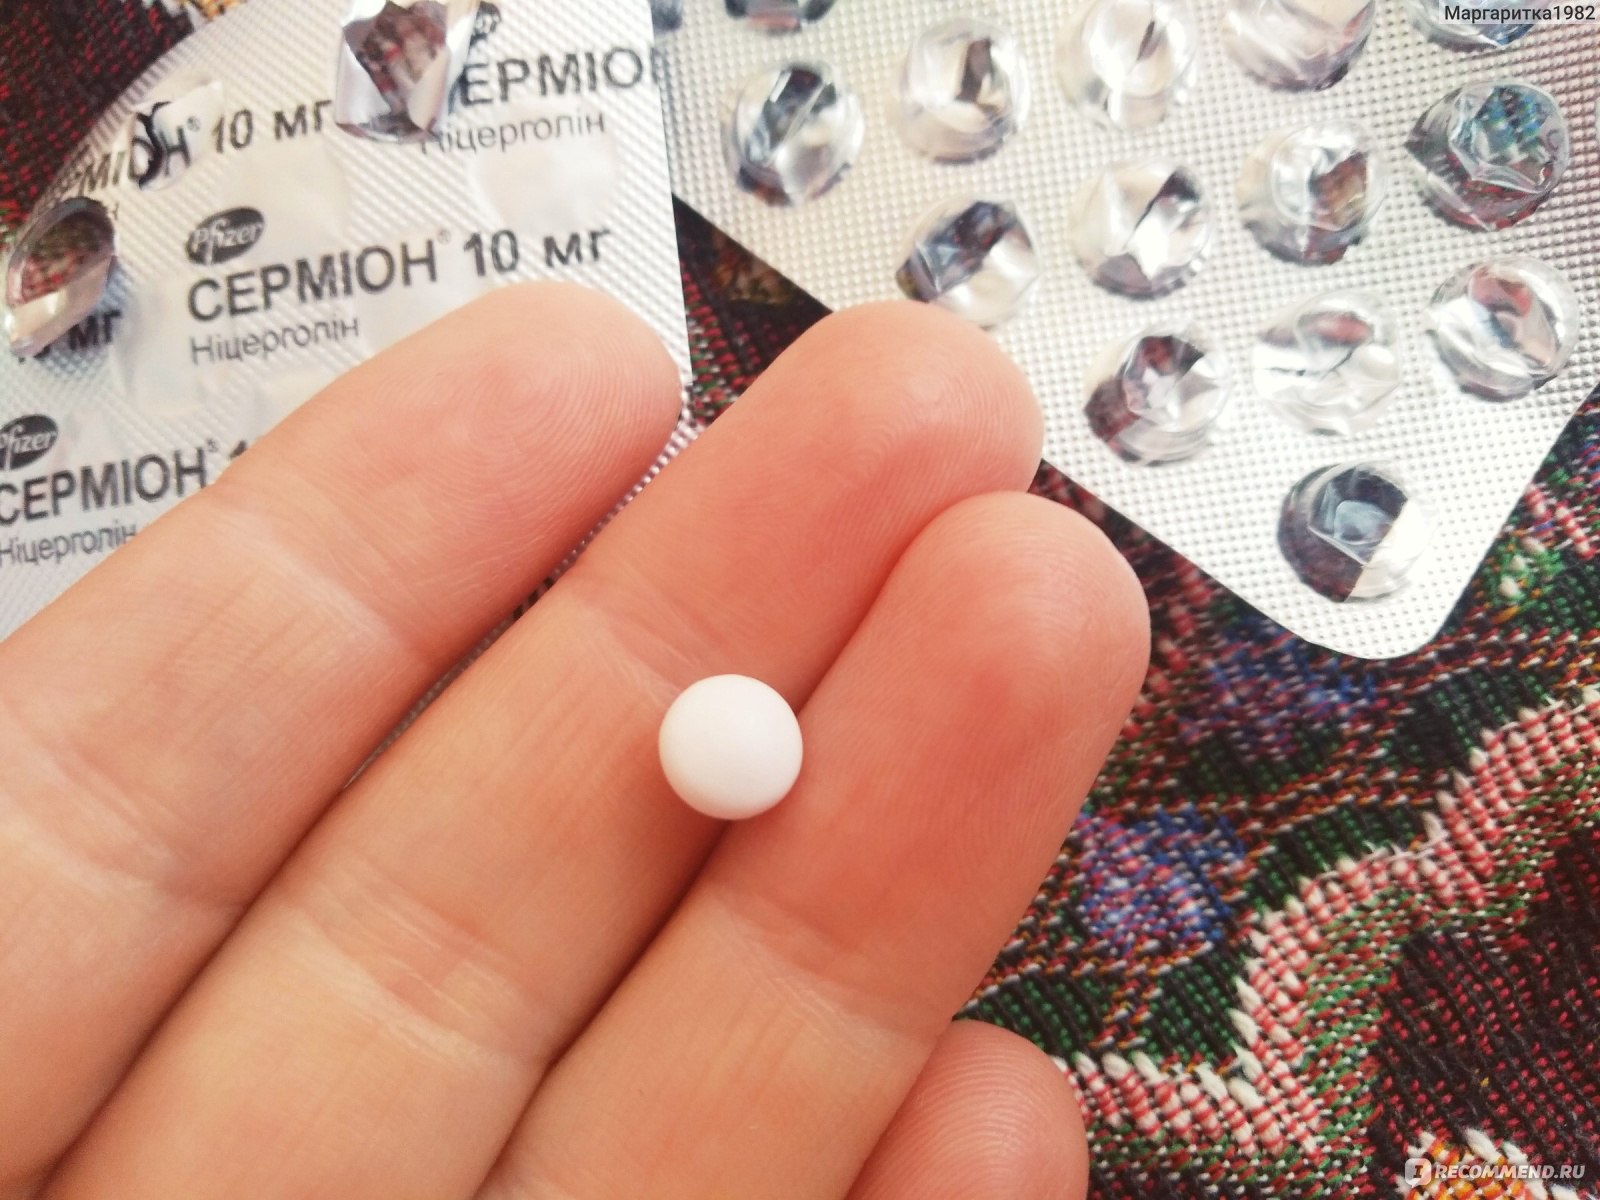 Таблетки Pfizer Сермион - «Сермион от головной боли, при нарушении .